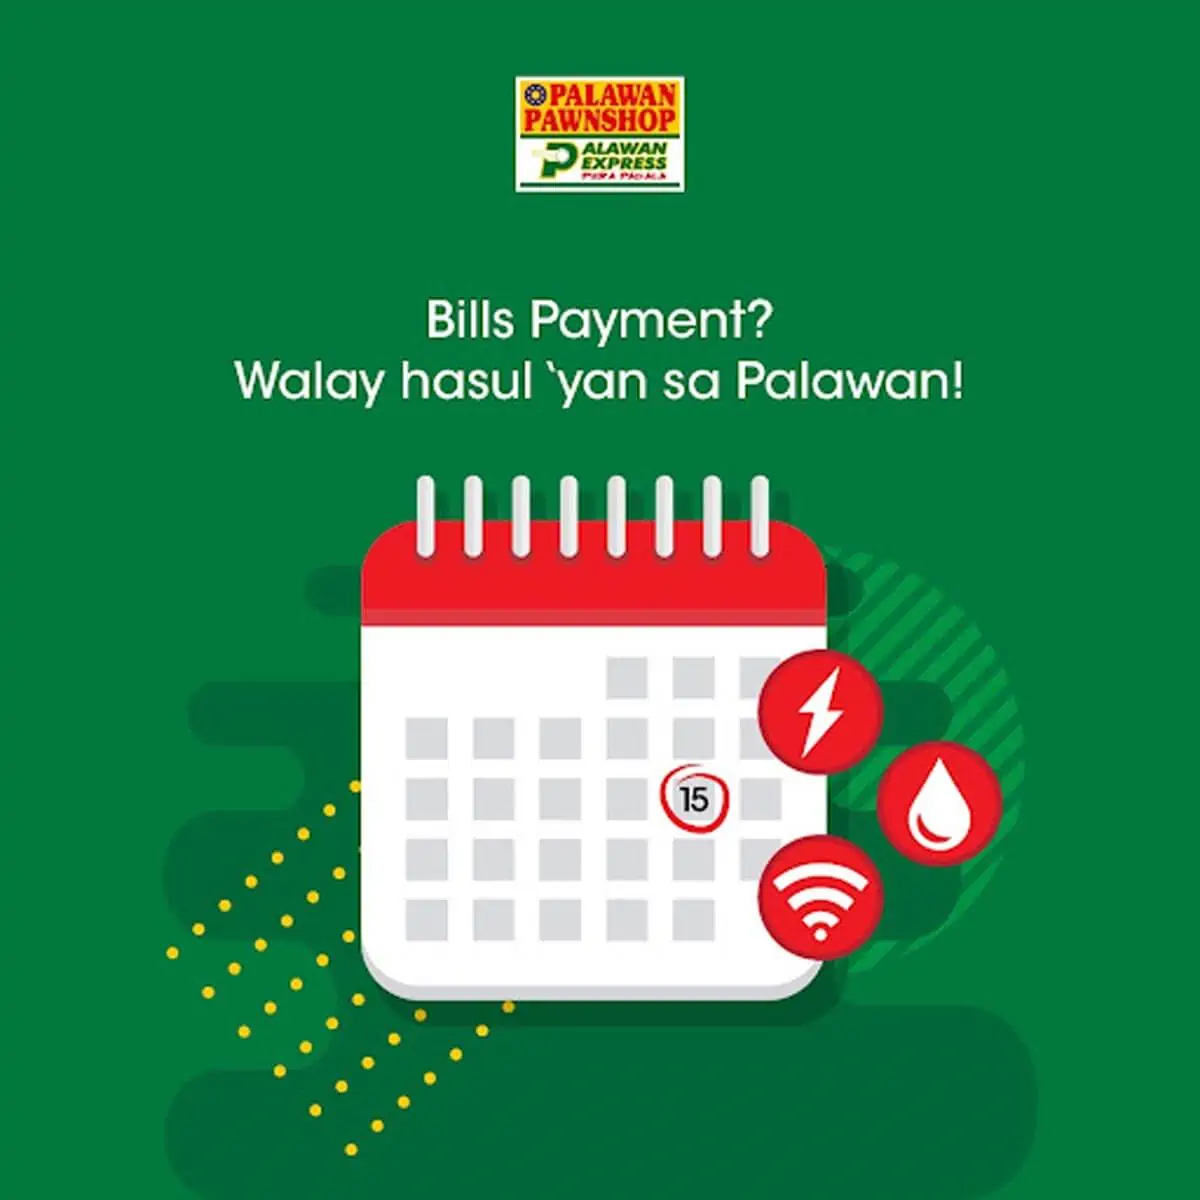 Bills-payment-walay-hasul